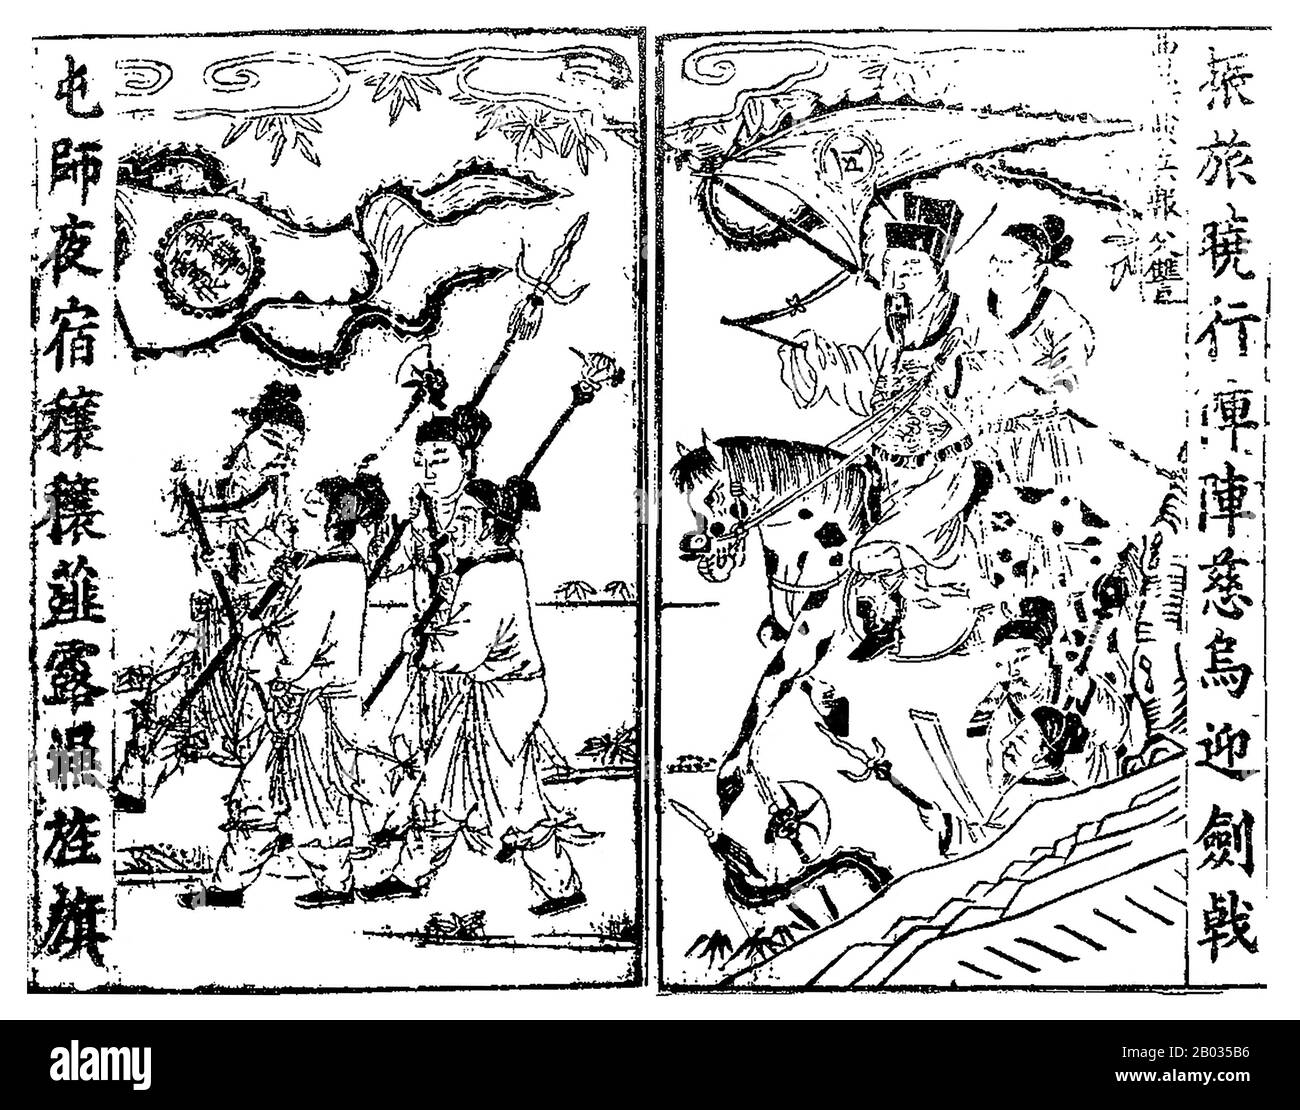 CaO Cao (155-15 marzo 220), nome di cortesia Mengde, è stato uno dei più importanti signori della guerra durante il periodo dei regni degli alberi. Il penultimo cancelliere della dinastia Han orientale, Cao è salito al grande potere negli ultimi anni della dinastia. Quando cadde la dinastia degli Han Orientali, Cao Cao riuscì a garantire le città più grandi e prospere delle pianure centrali della Cina settentrionale, riunendosi sotto il suo dominio. Durante Il Periodo Dei Tre Regni, pose le basi per quello che sarebbe diventato lo stato di Cao Wei, onorato postumo con il titolo di 'Imperatore Wu di Wei'. Anche se era stato molto successo Foto Stock